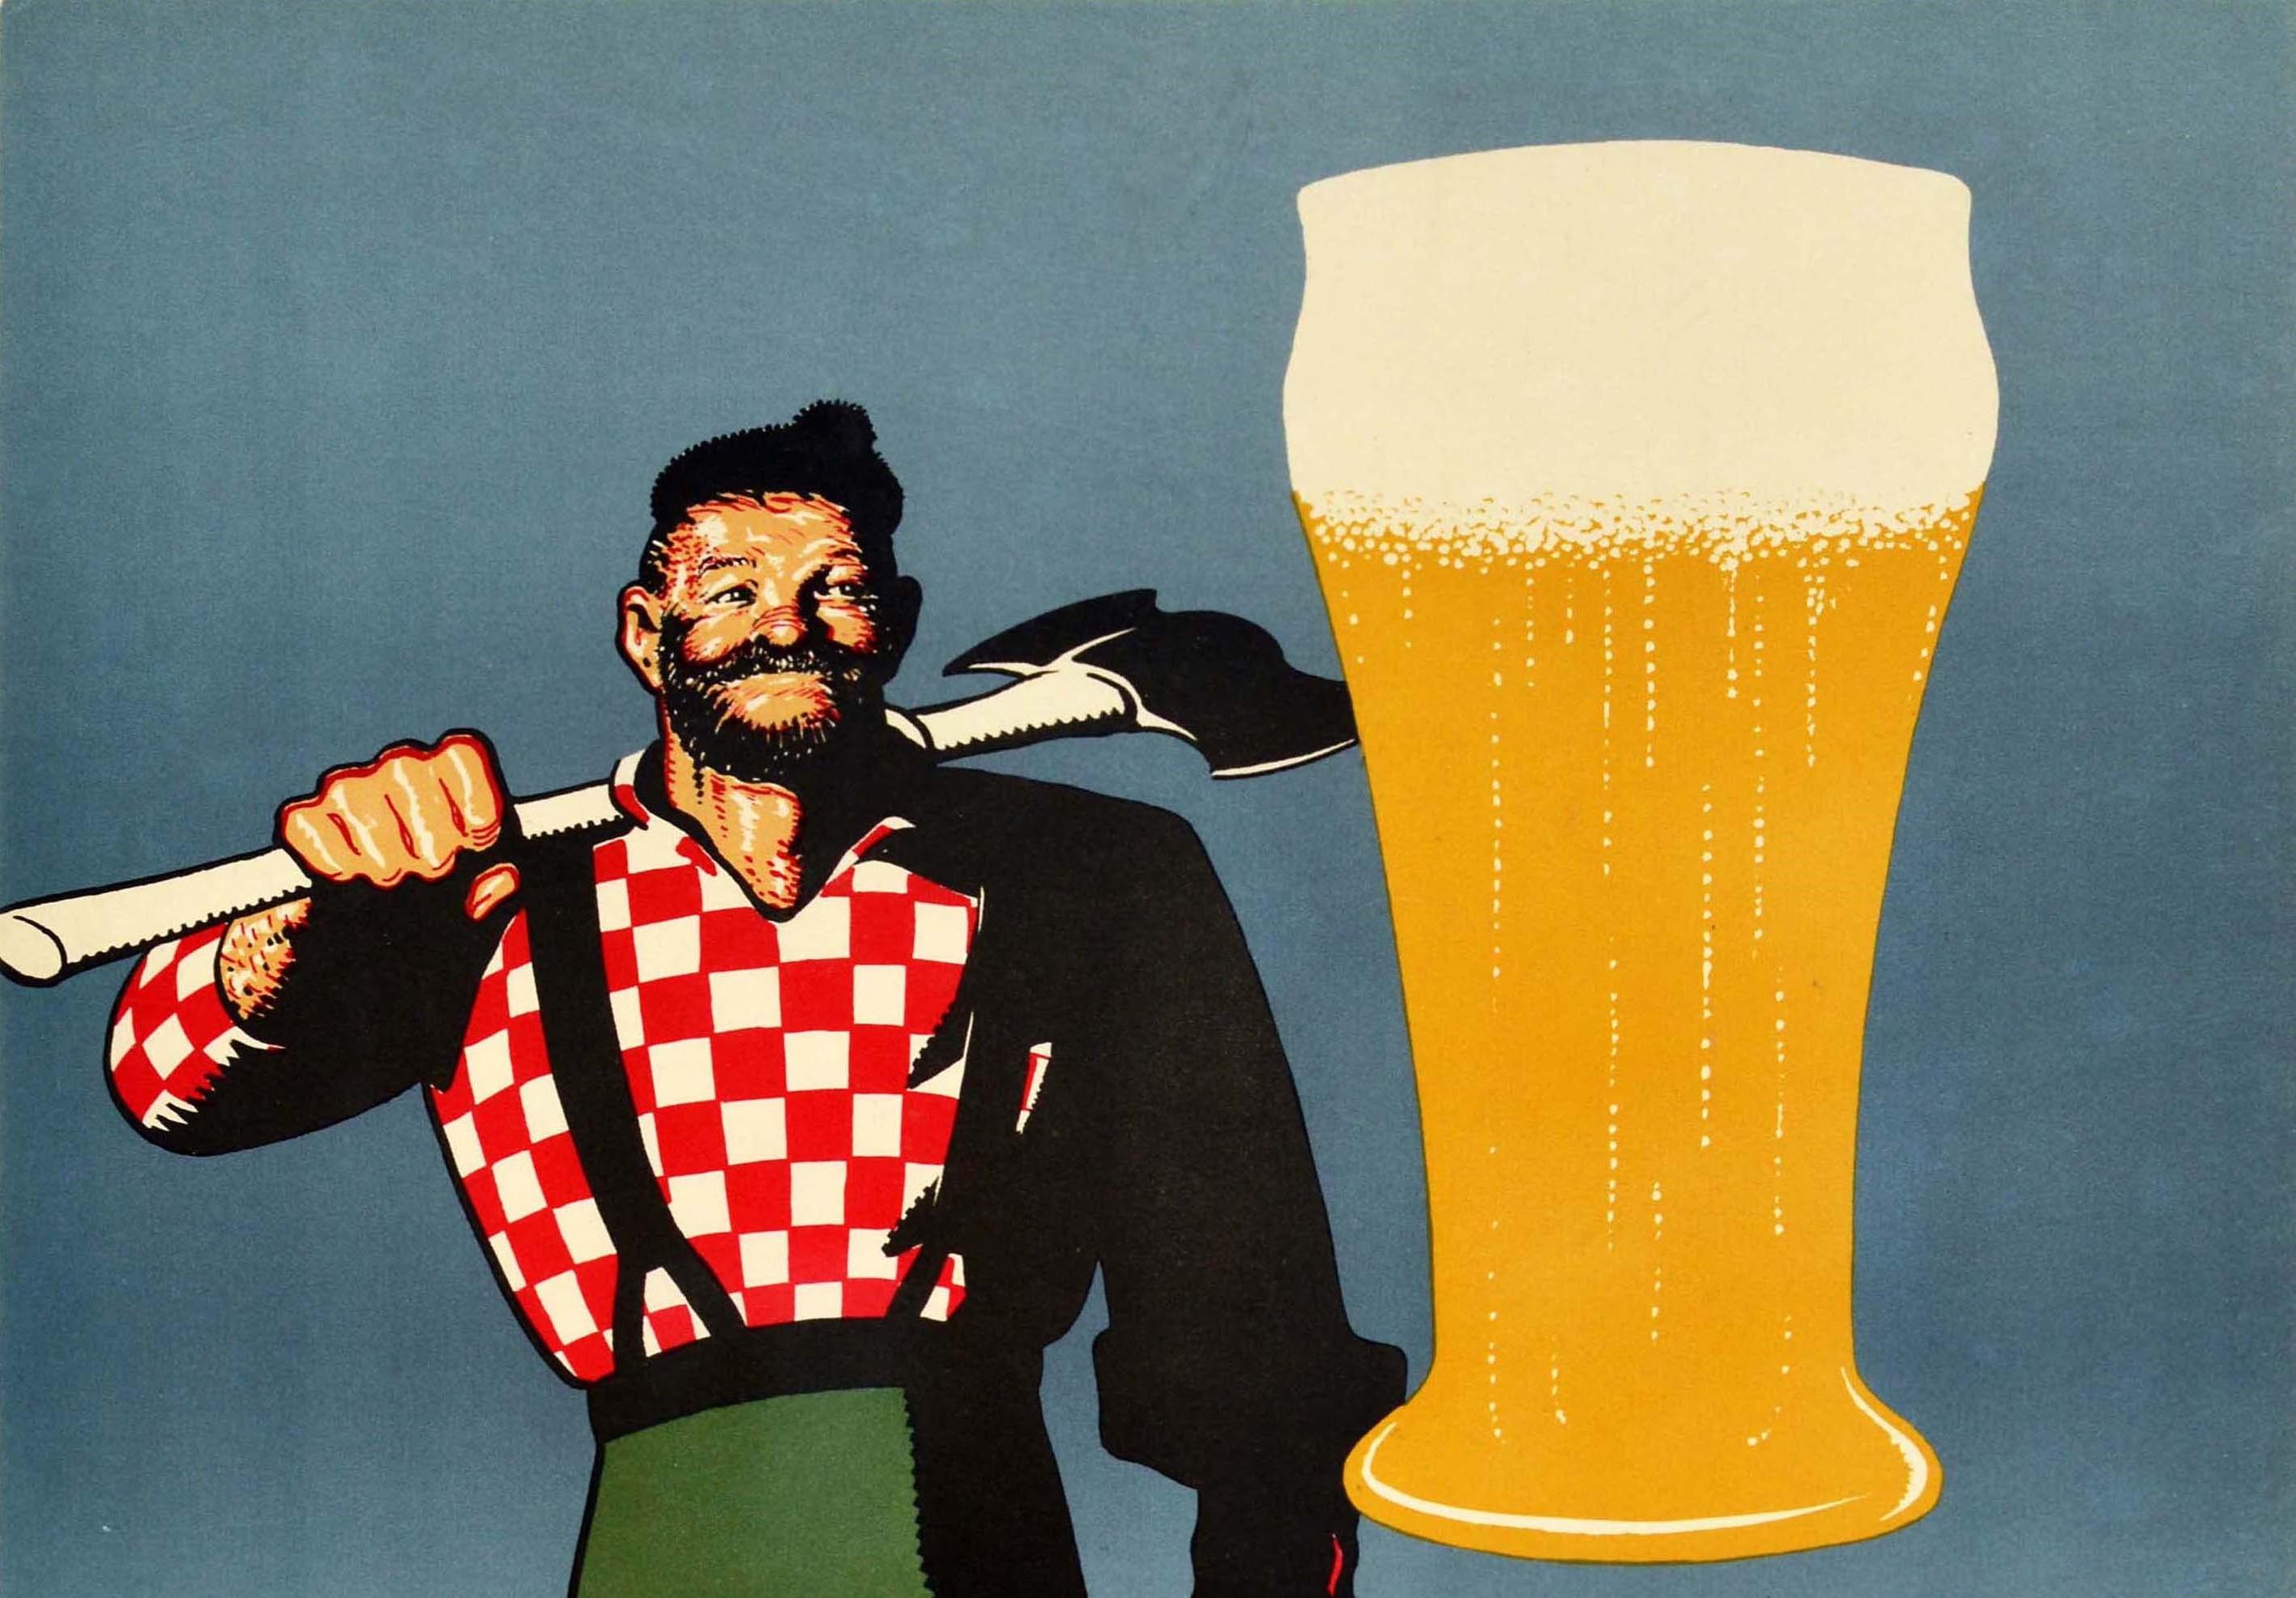 Affiche publicitaire originale pour une boisson vintage - Paul Bunyan Honestly Great in Quality and Pleasure - présentant une superbe image d'un homme barbu souriant vêtu d'une chemise rouge et blanche à carreaux et d'un pantalon et de bretelles